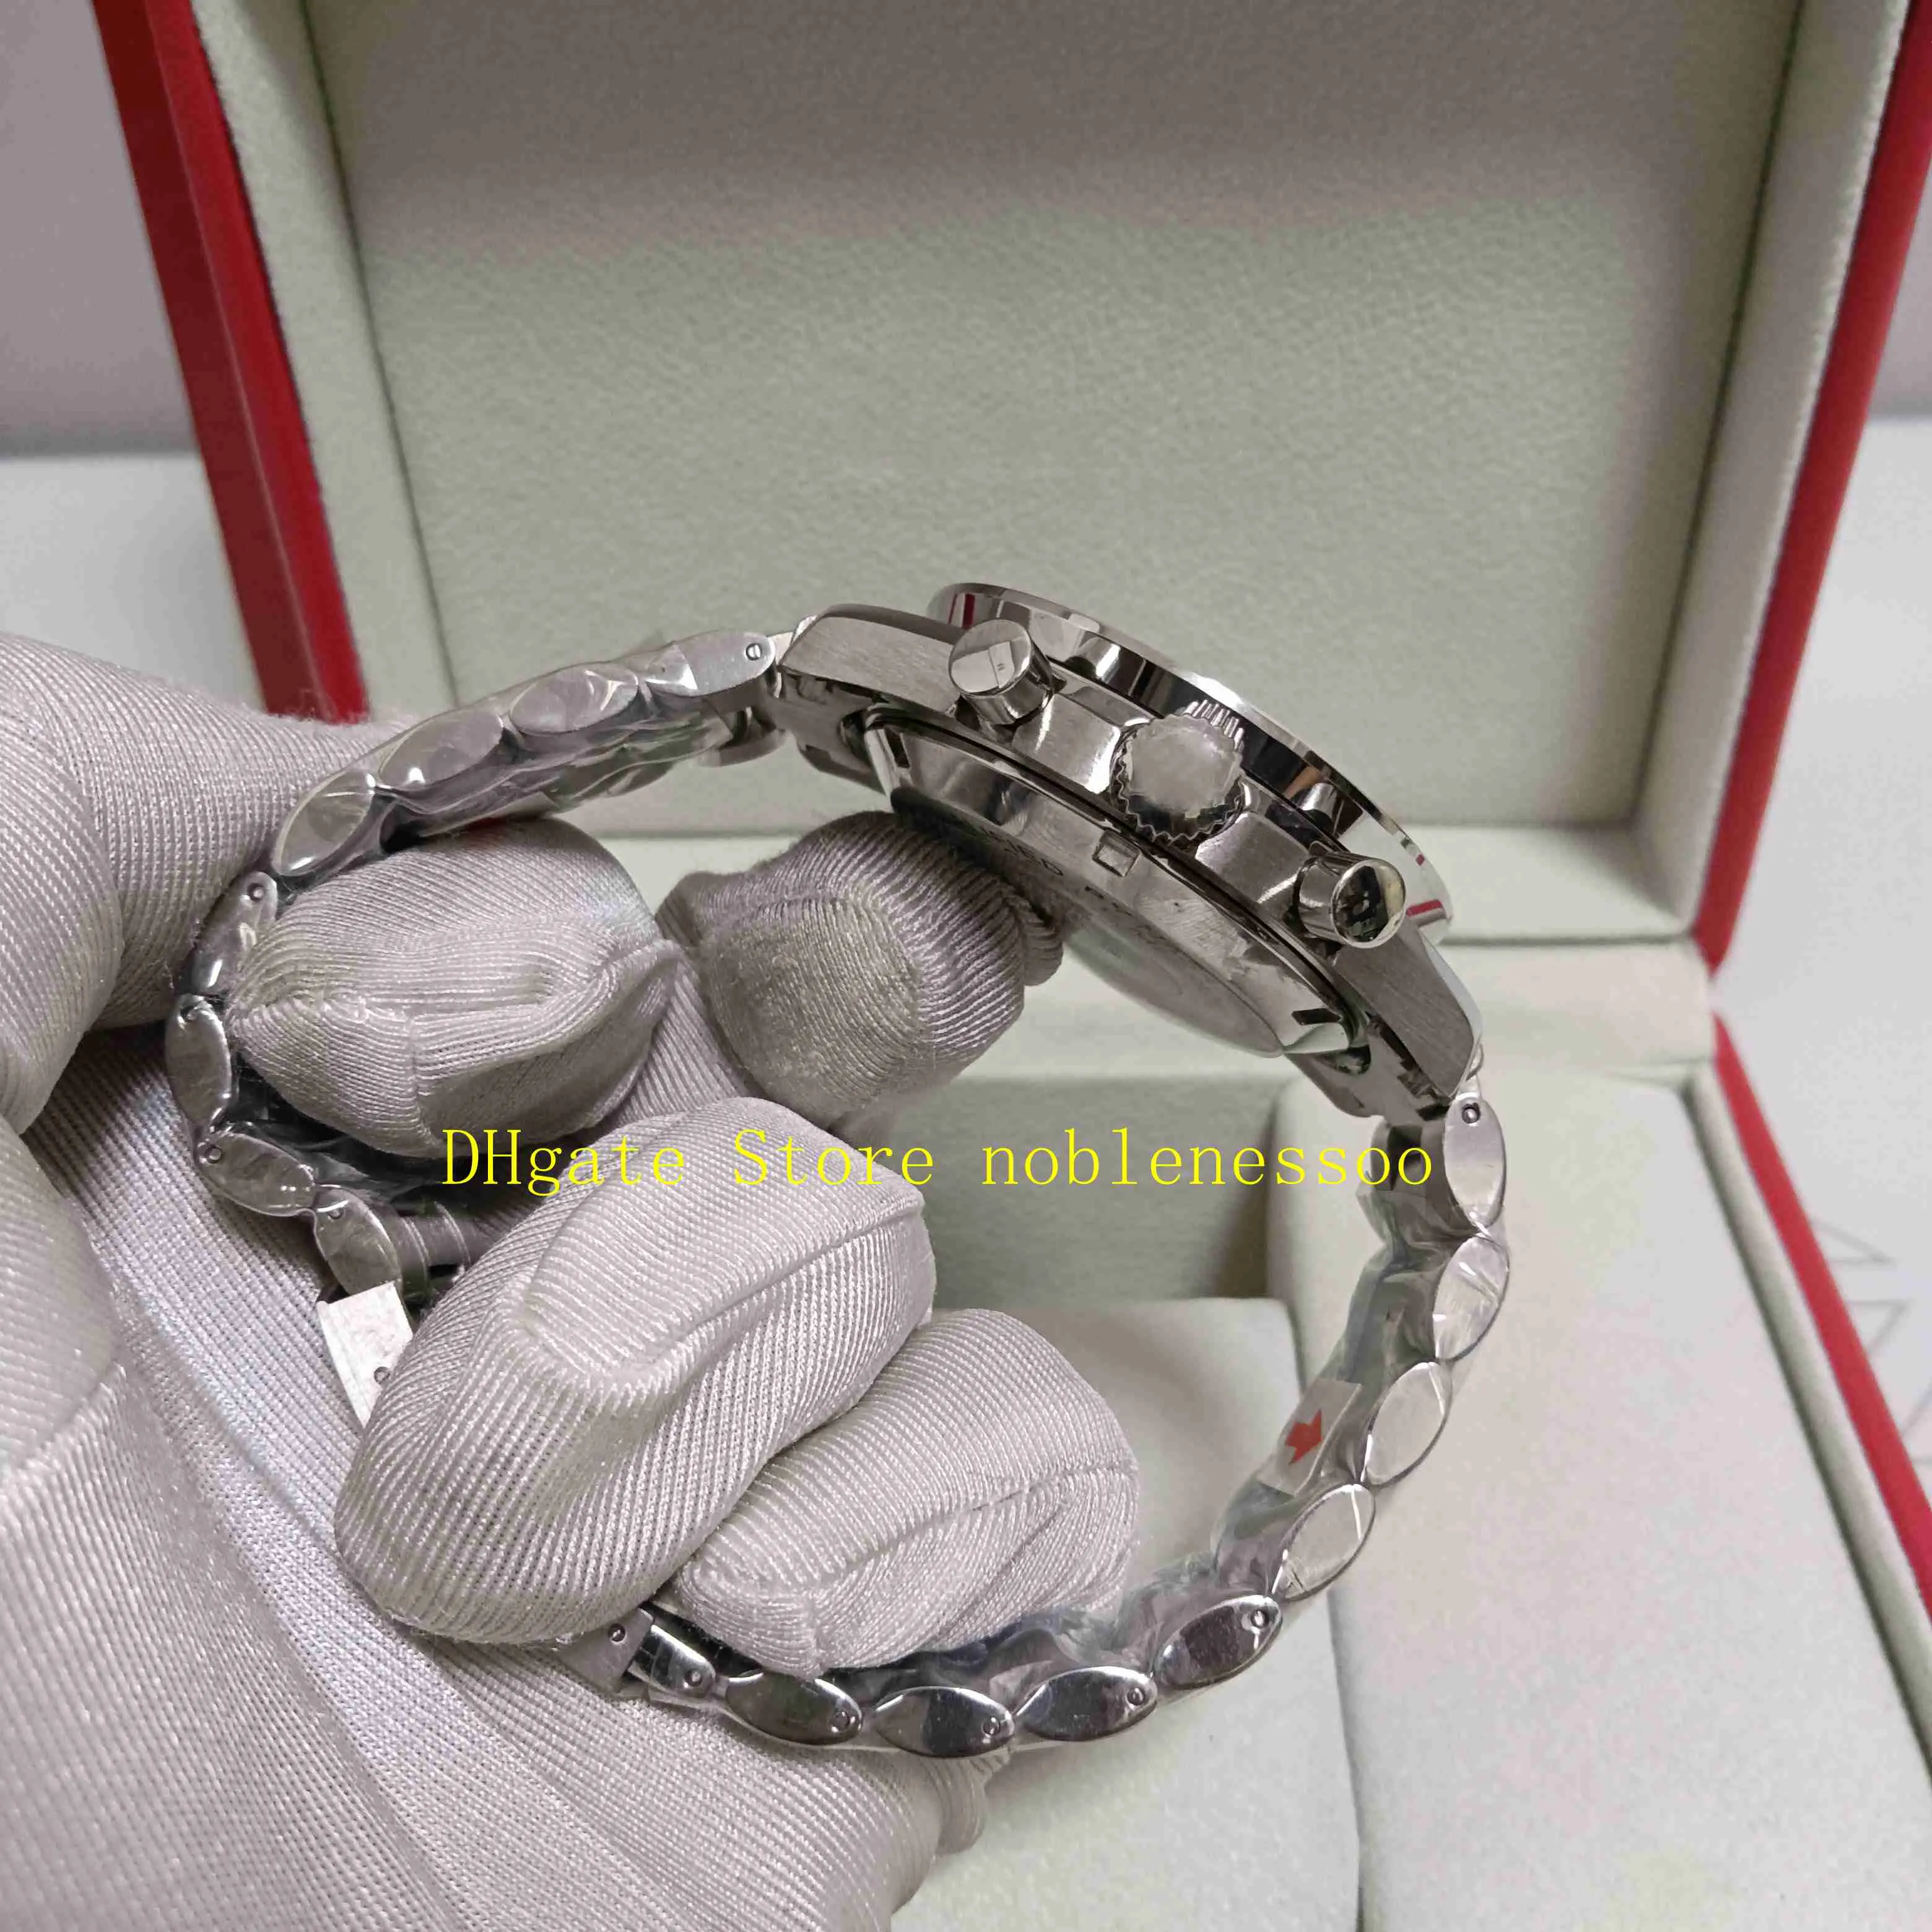 Com a caixa original de alta qualidade masculino cronógrafo assistir mensagens pretas crono trabalho profissional pulseira de aço inoxidável quartzo movem287g